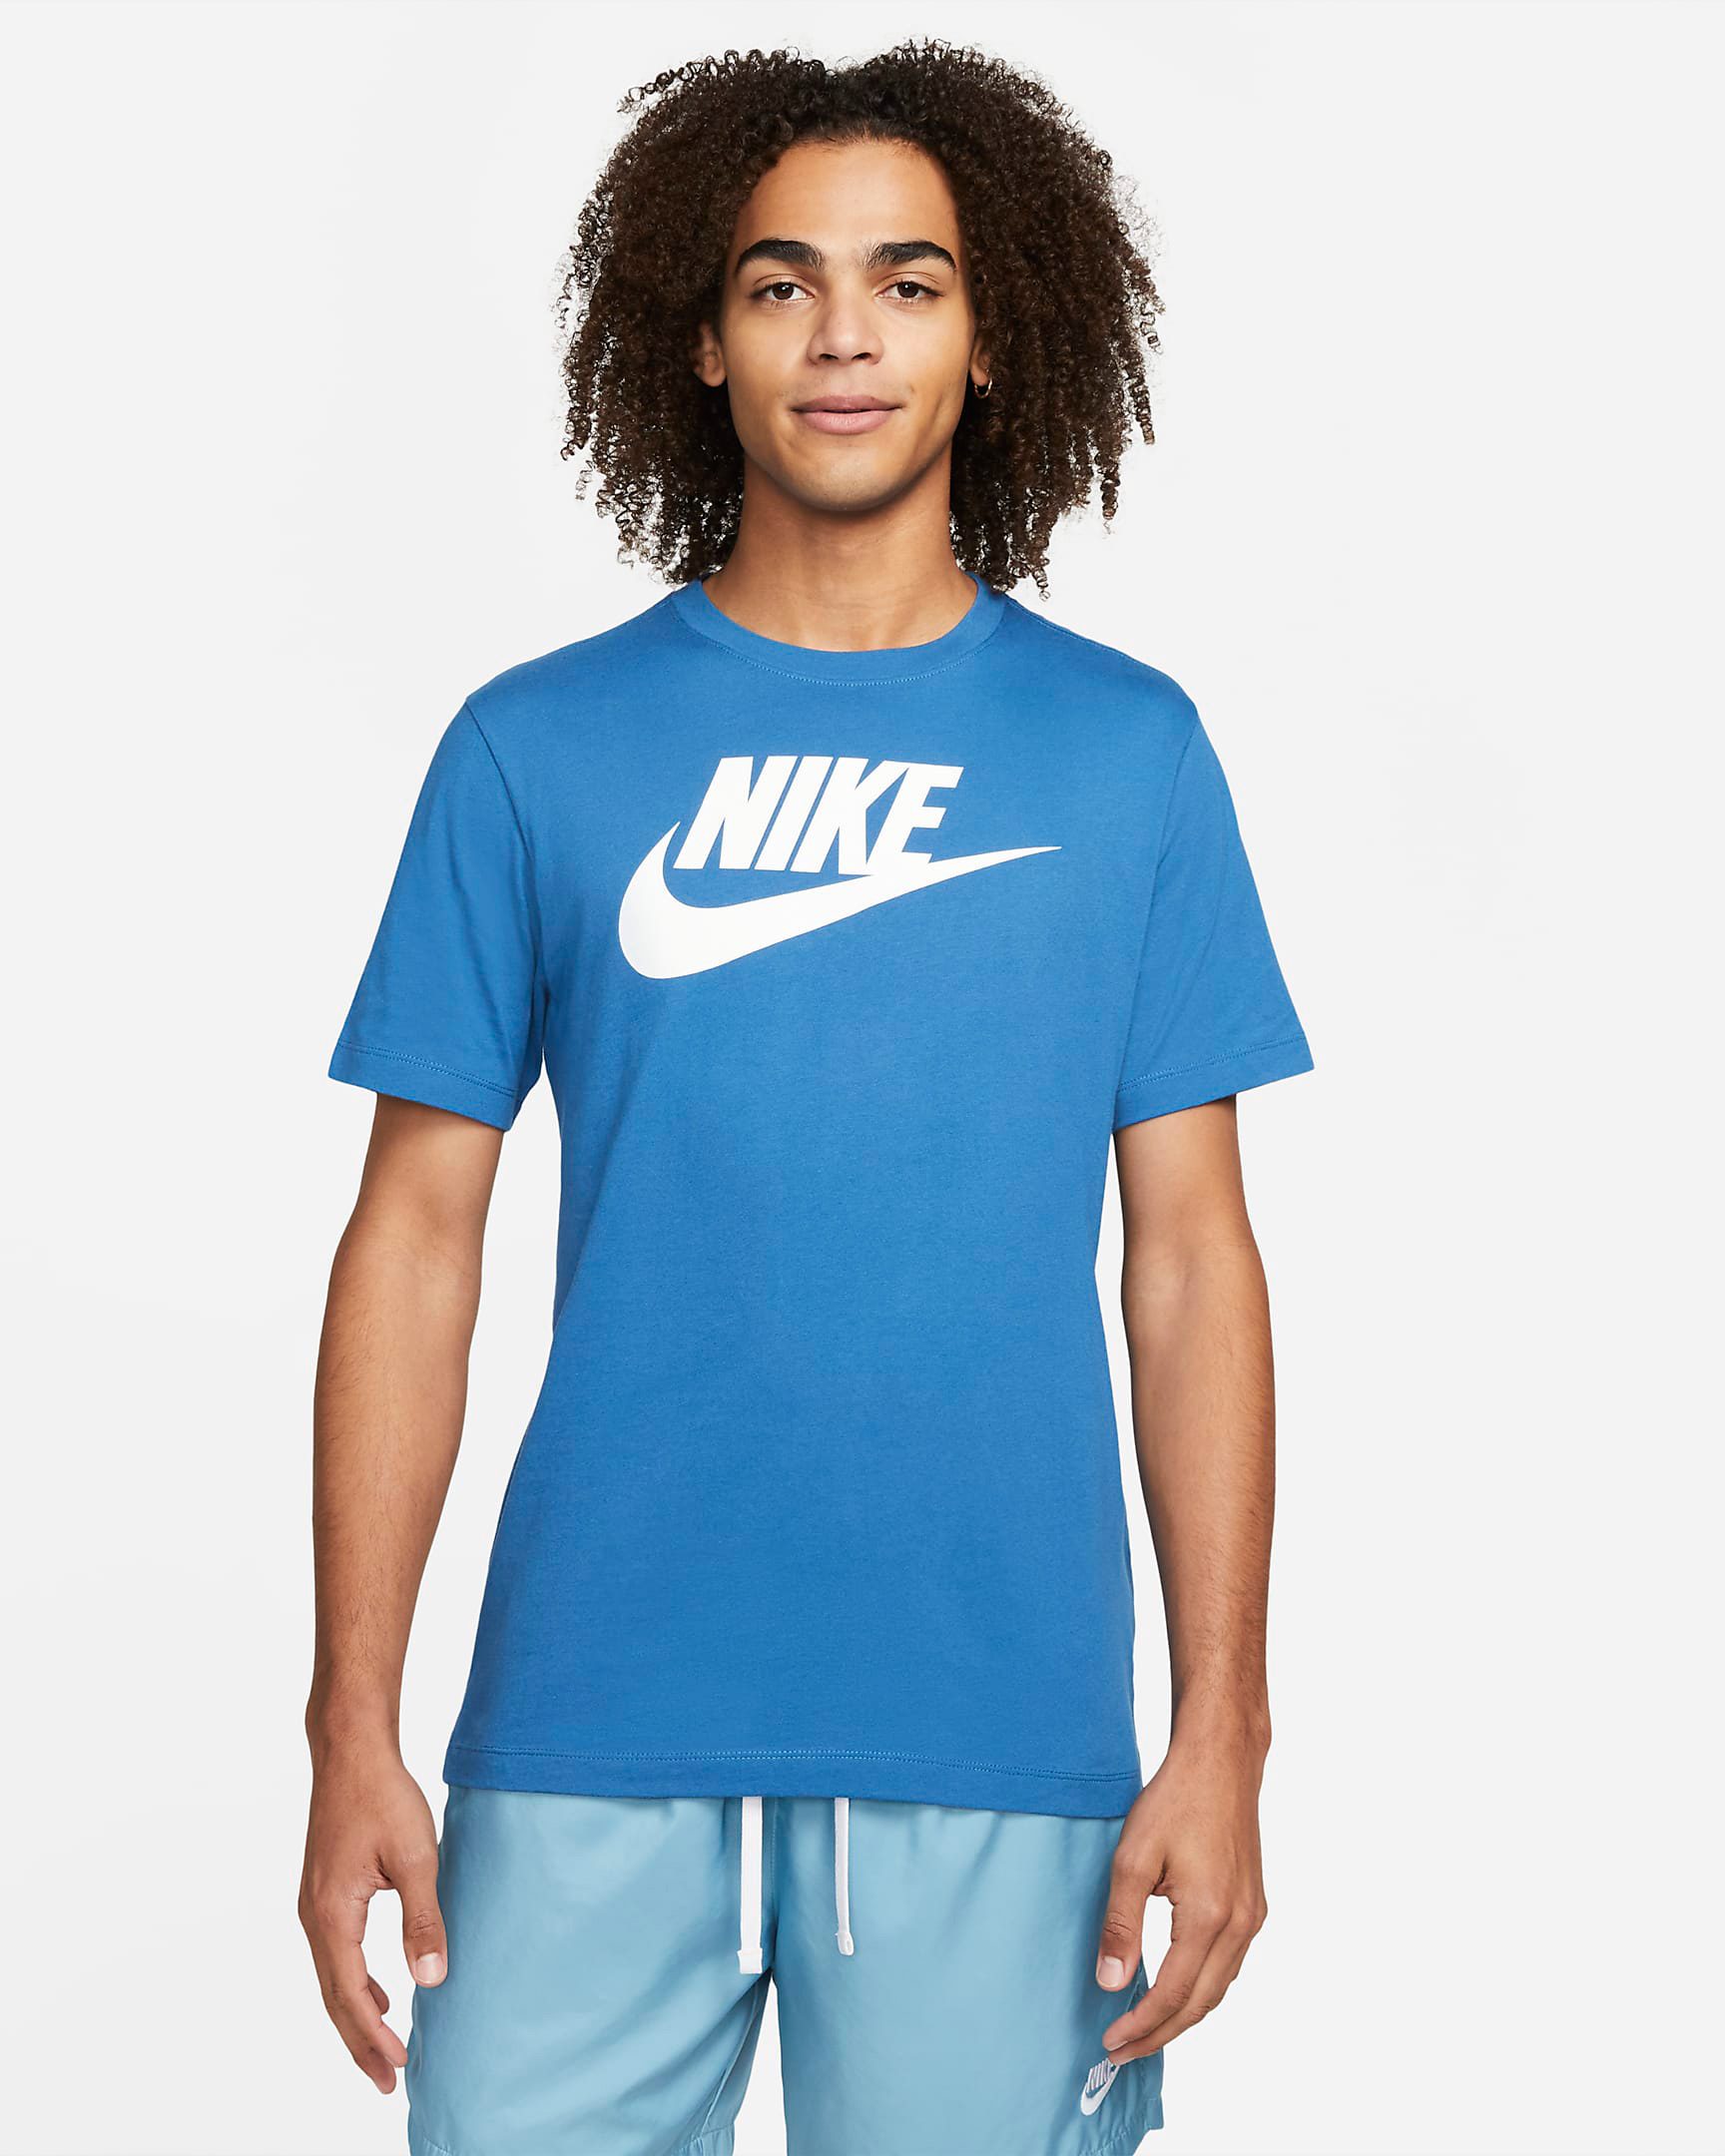 nike-sportswear-dark-marina-blue-shirt